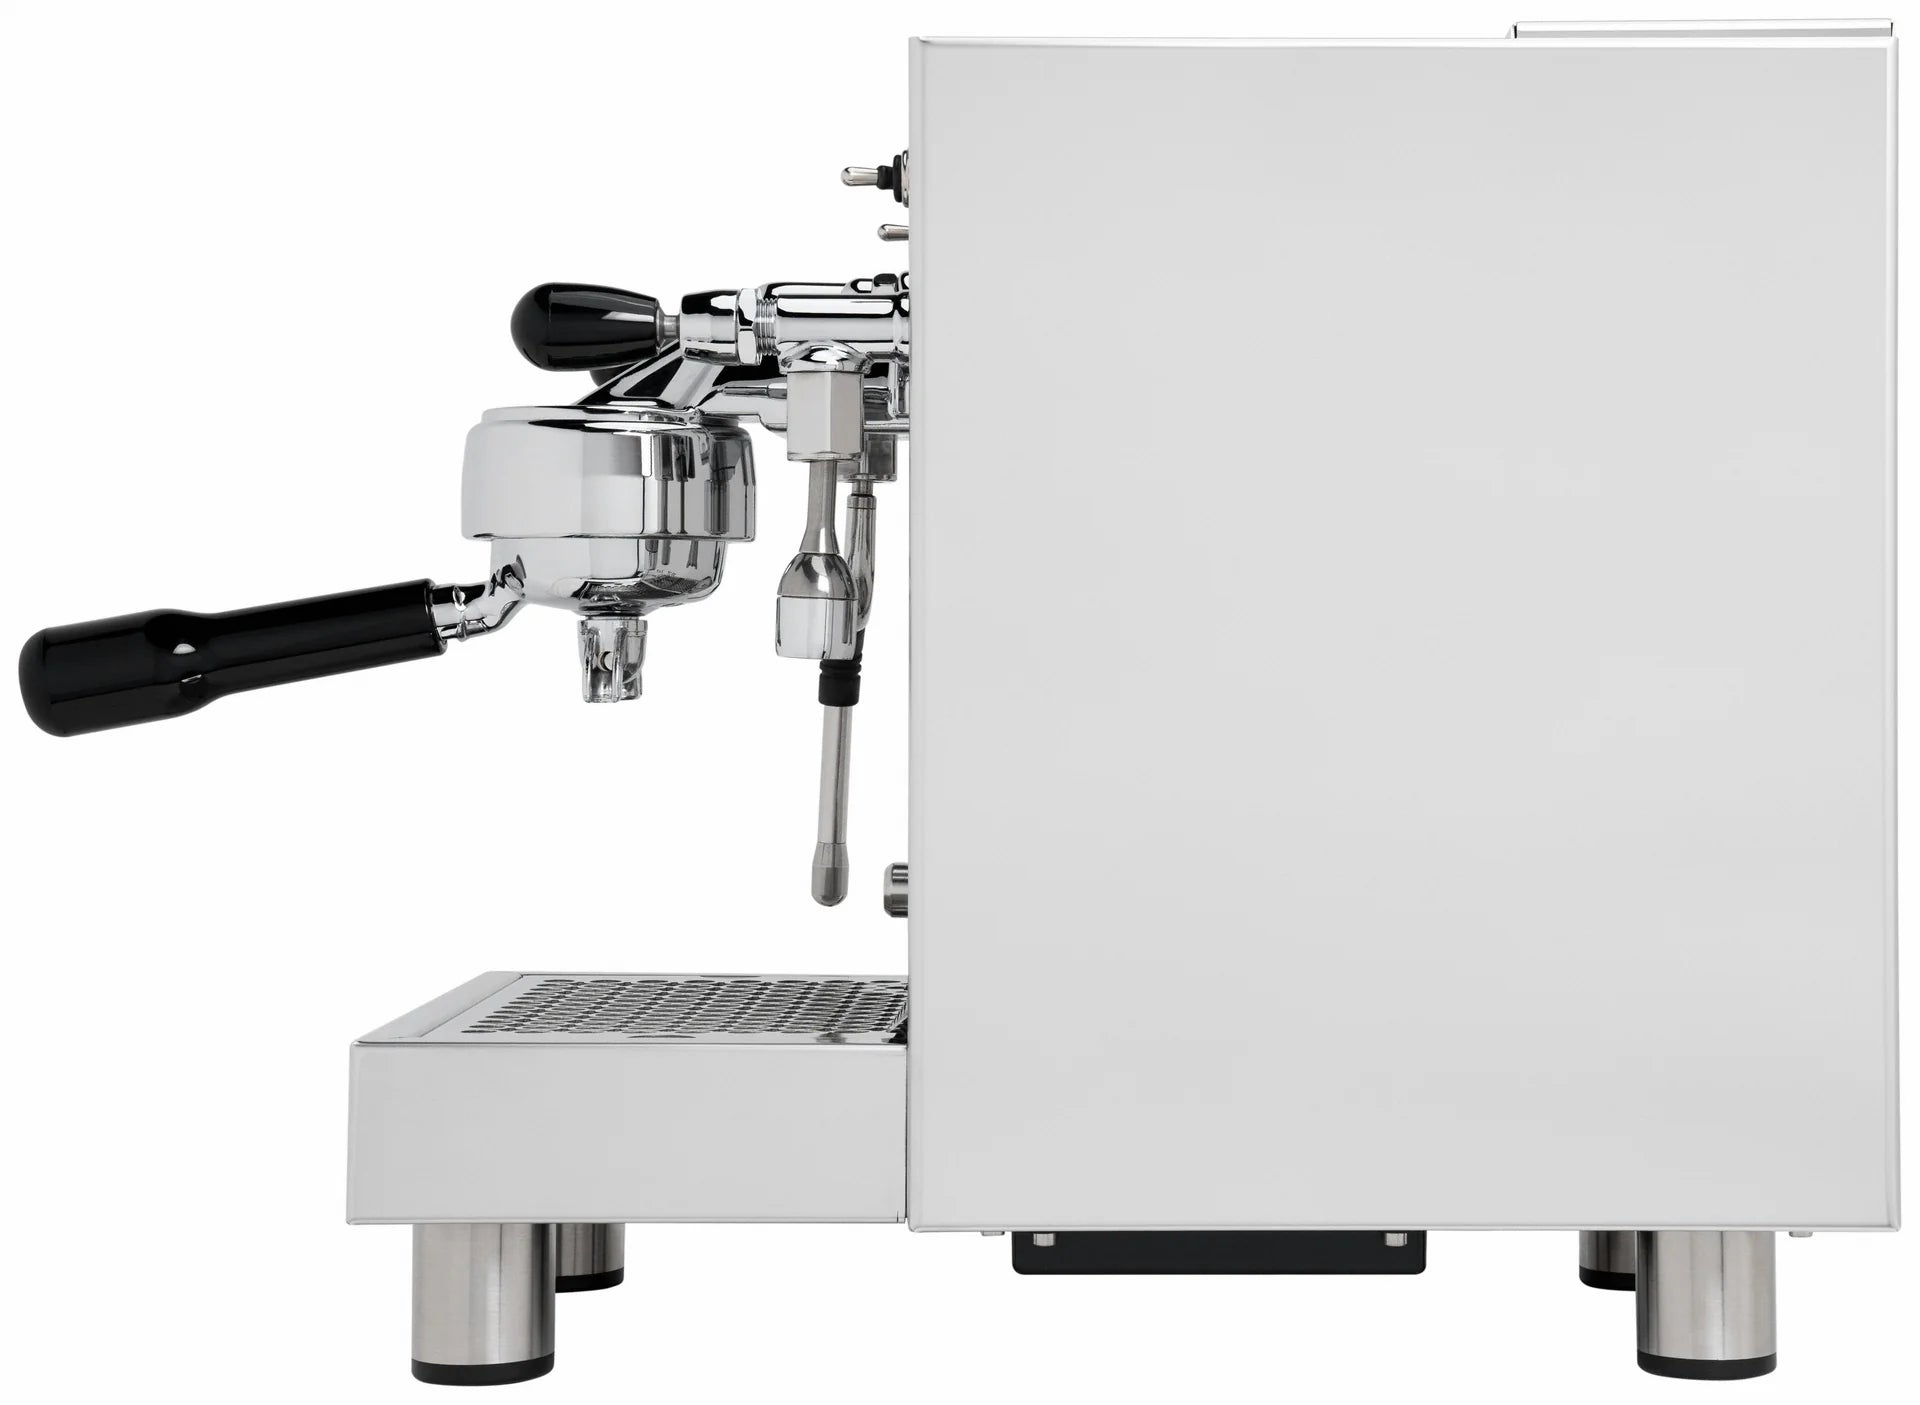 Bezzera - Espresso Machine (BZ10P)